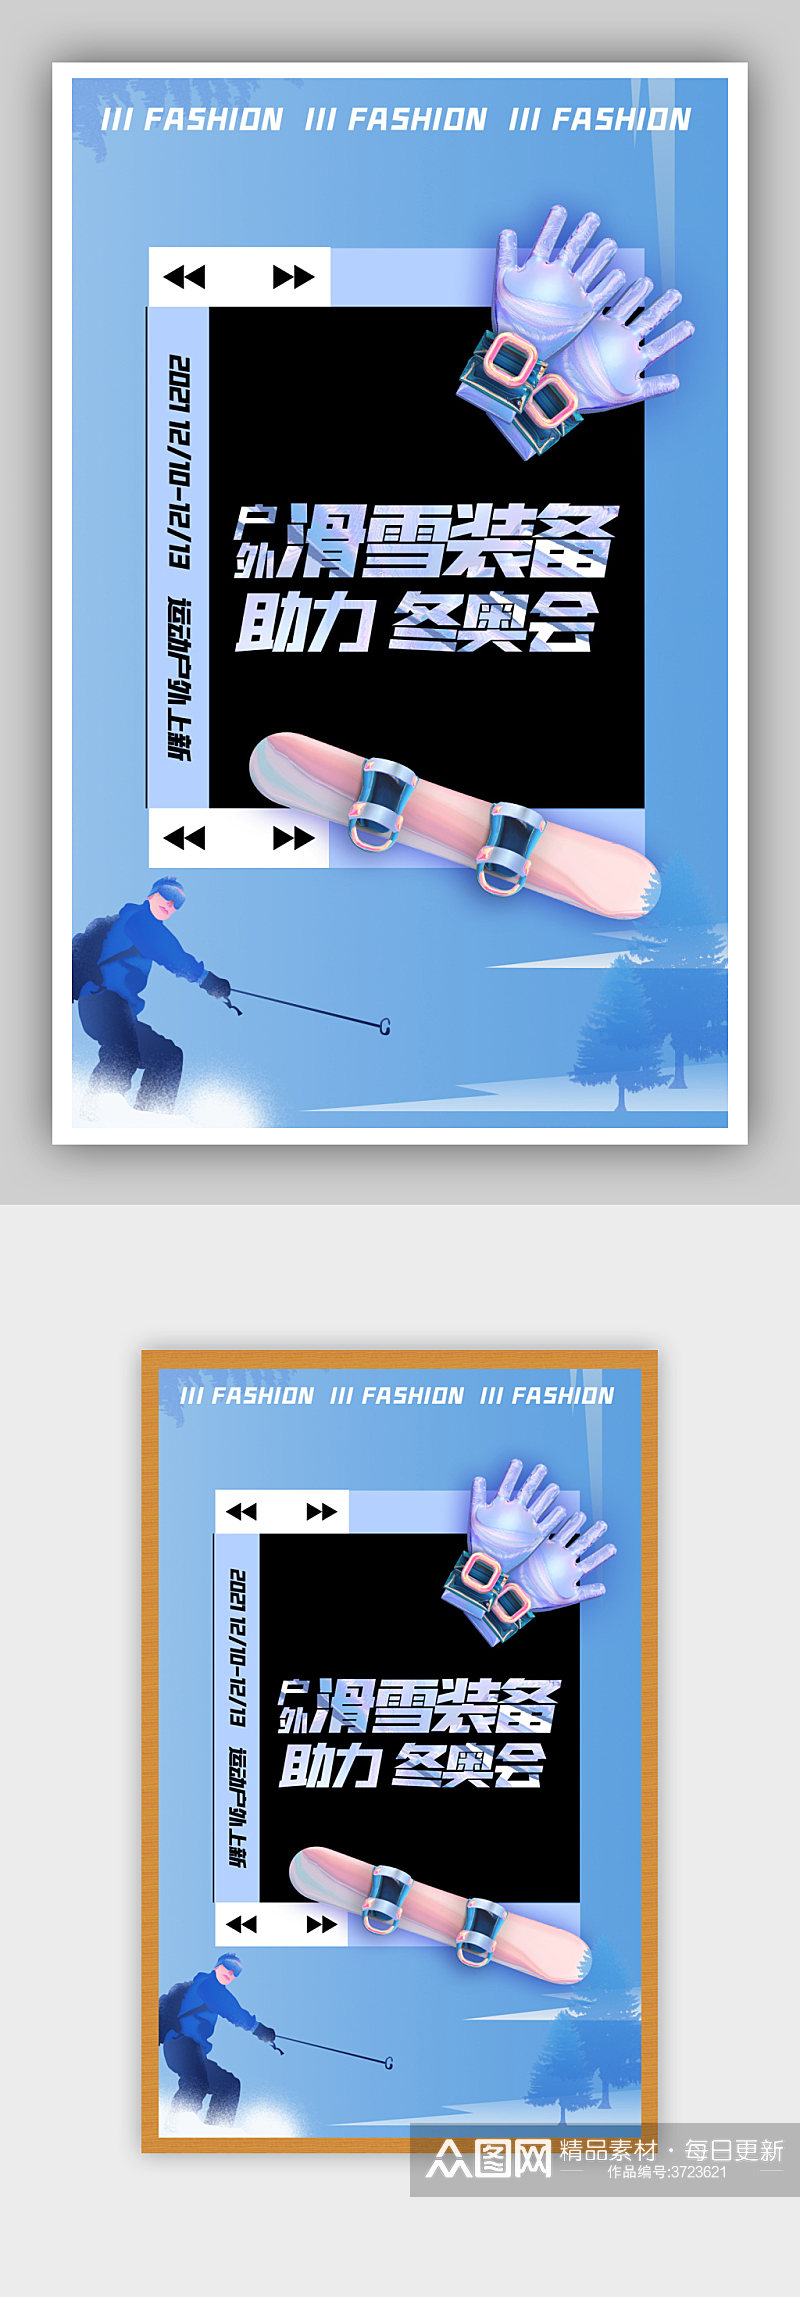 运动会滑雪装备蓝色简约海报素材